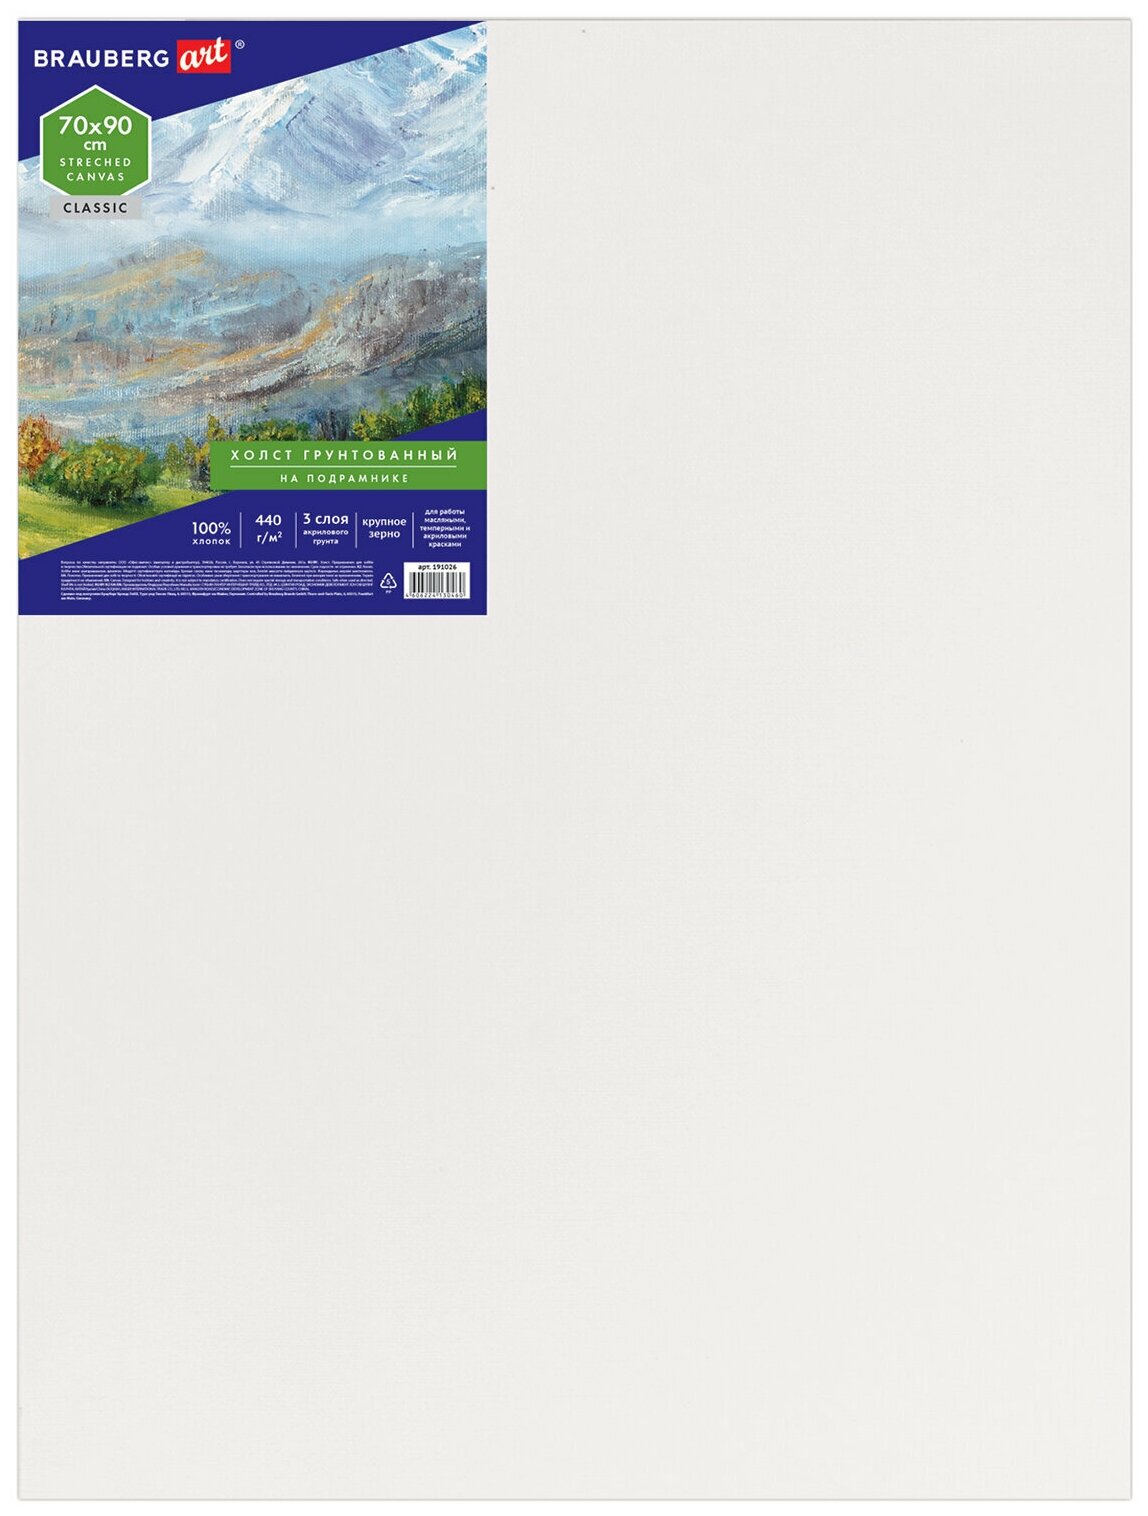 Холст на подрамнике Brauberg Art Classic, 70х90 см, грунтованный, 100% хлопок, крупное зерно, 191026